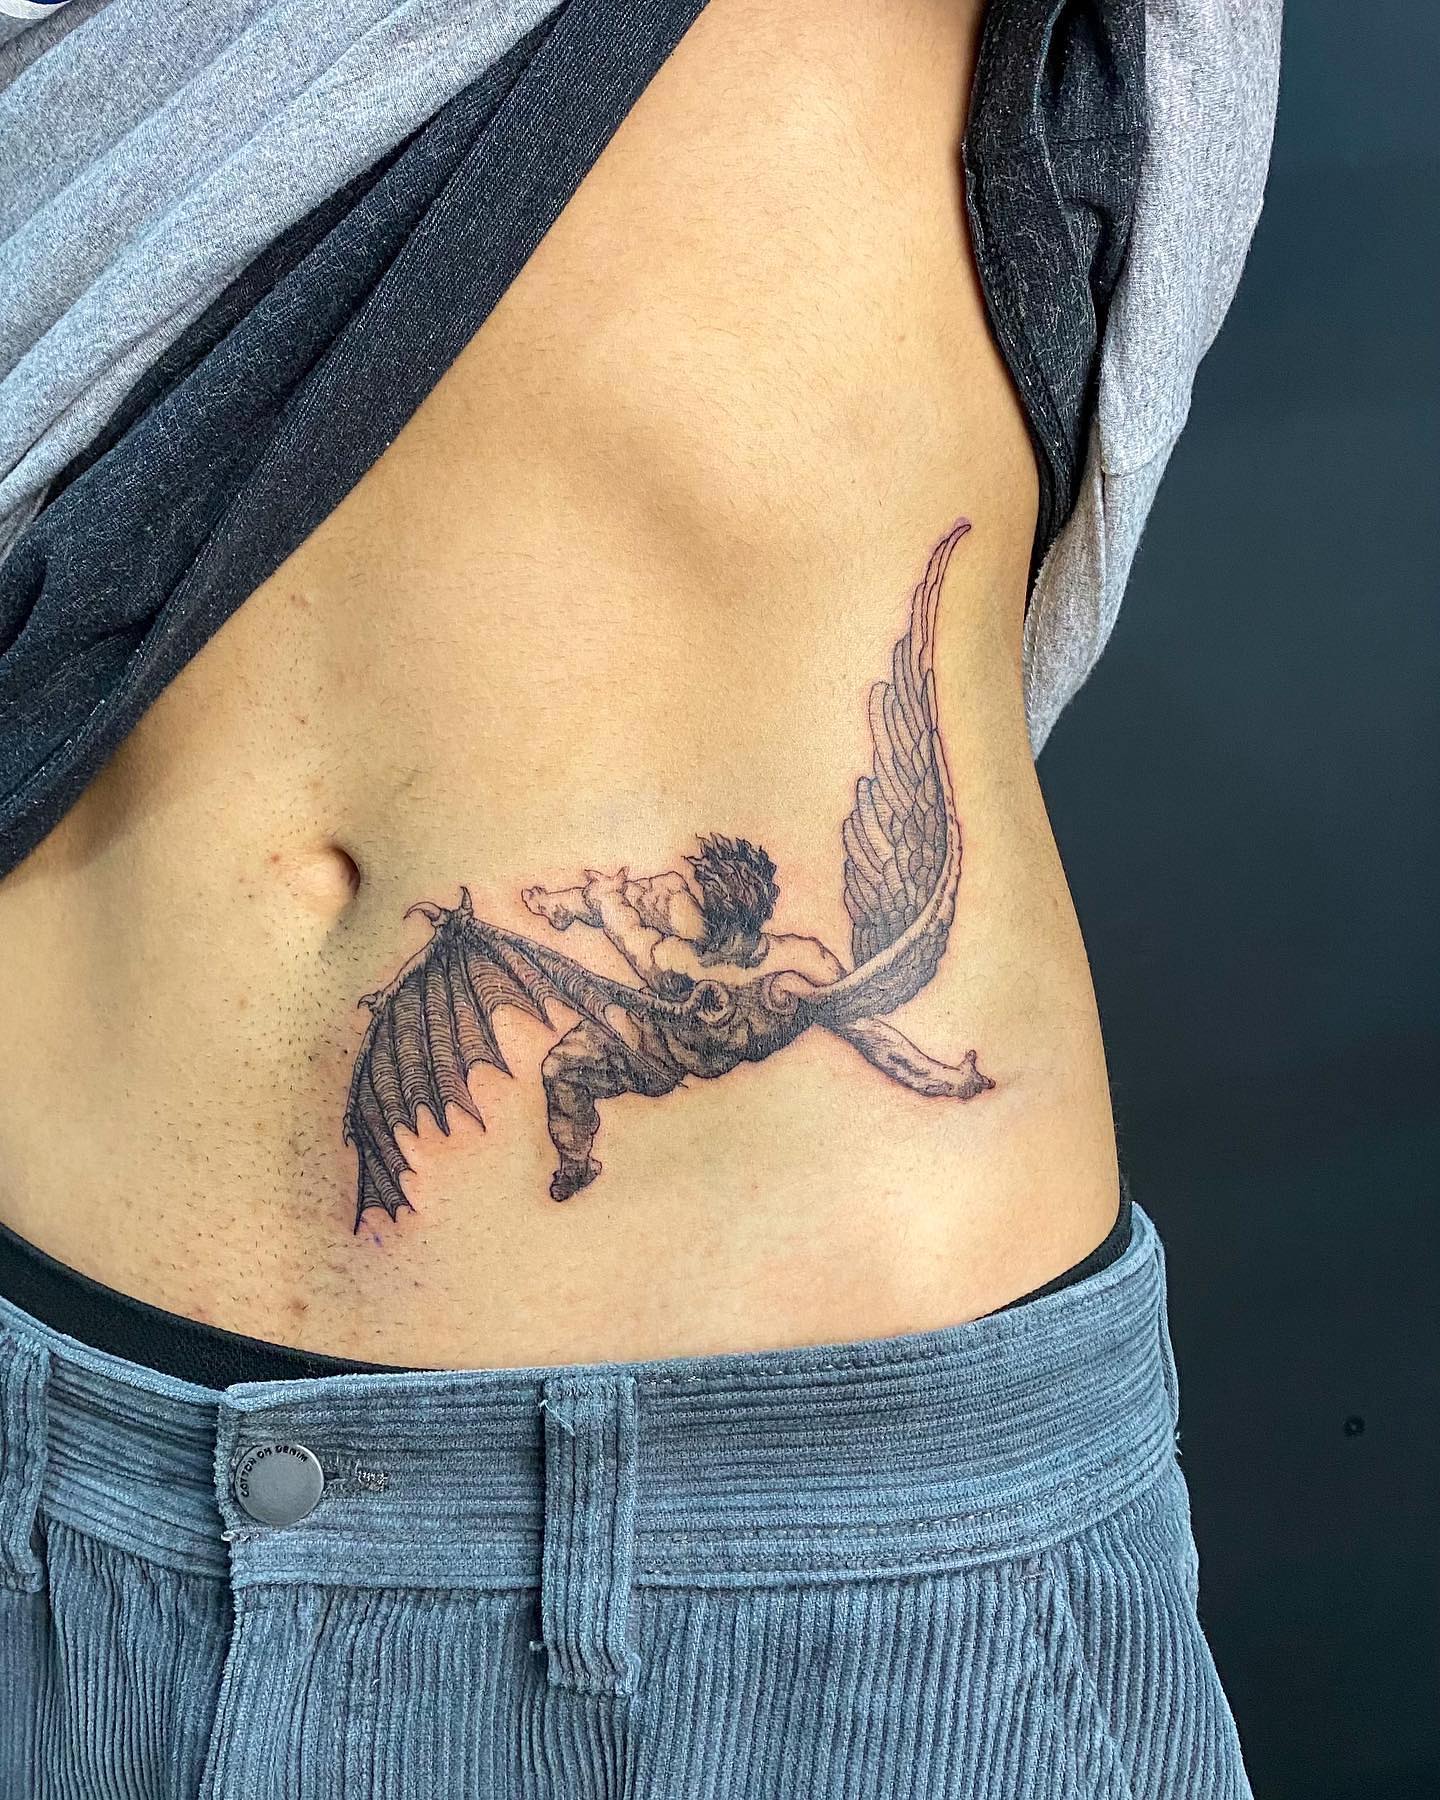 Icarus tattoo in 2022  Icarus tattoo Tattoo now Tattoos in 2022   Mythology tattoos Icarus ta  Mythology tattoos Greek mythology tattoos  Tattoo art drawings